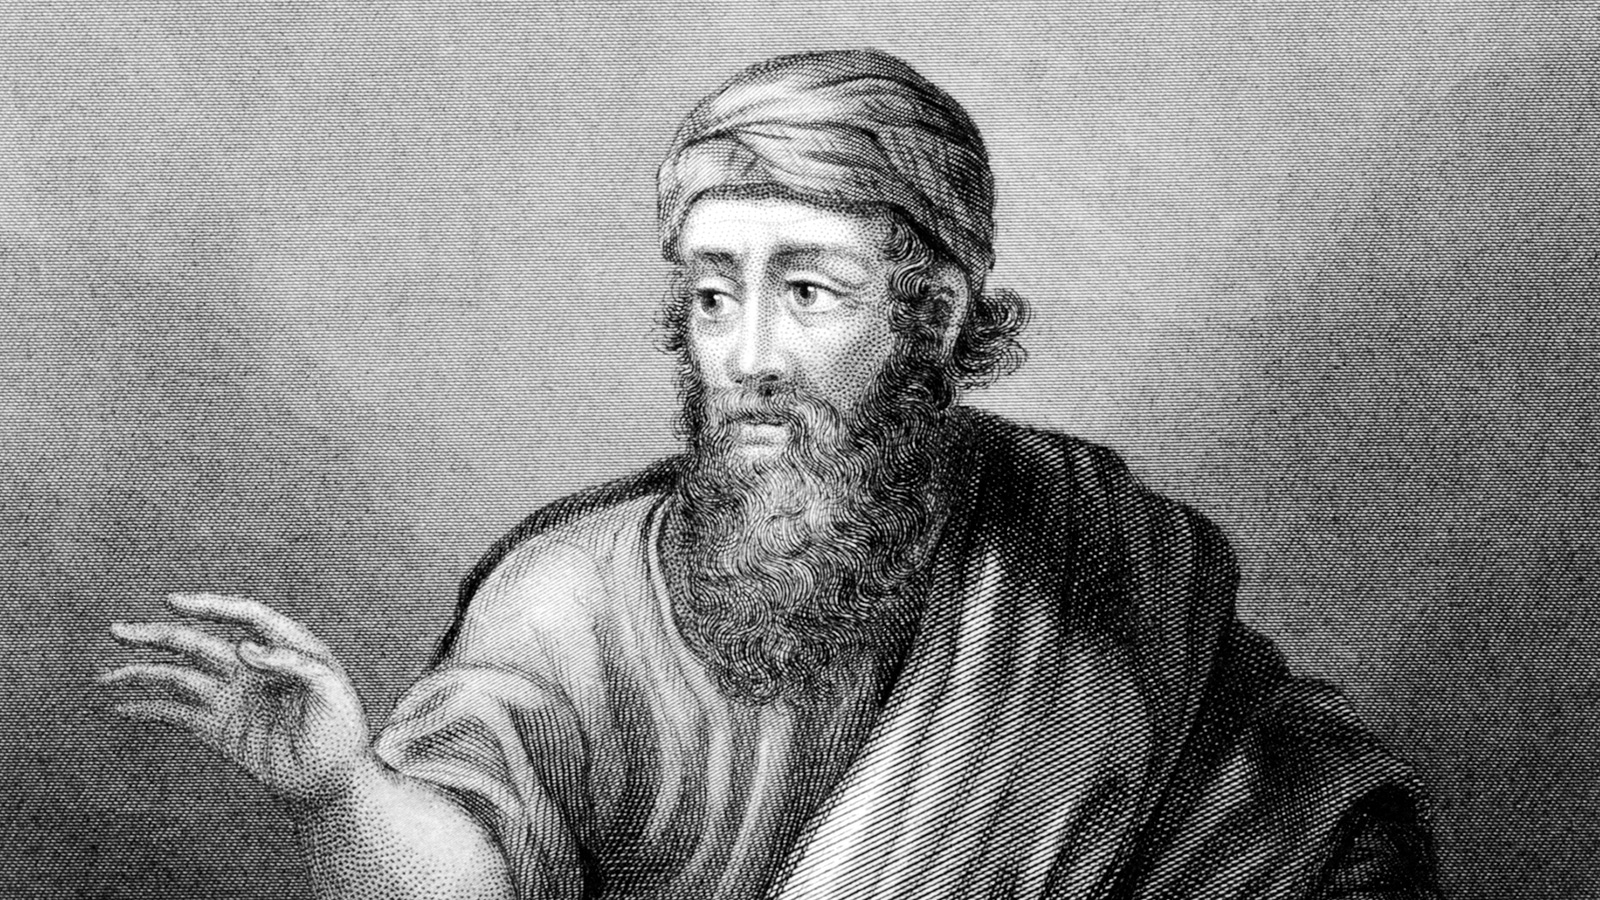  المعادلة الرياضية لفيثاغورس تعود إلى العصر البابلي وليست اختراعا خاصا به (غيتي)